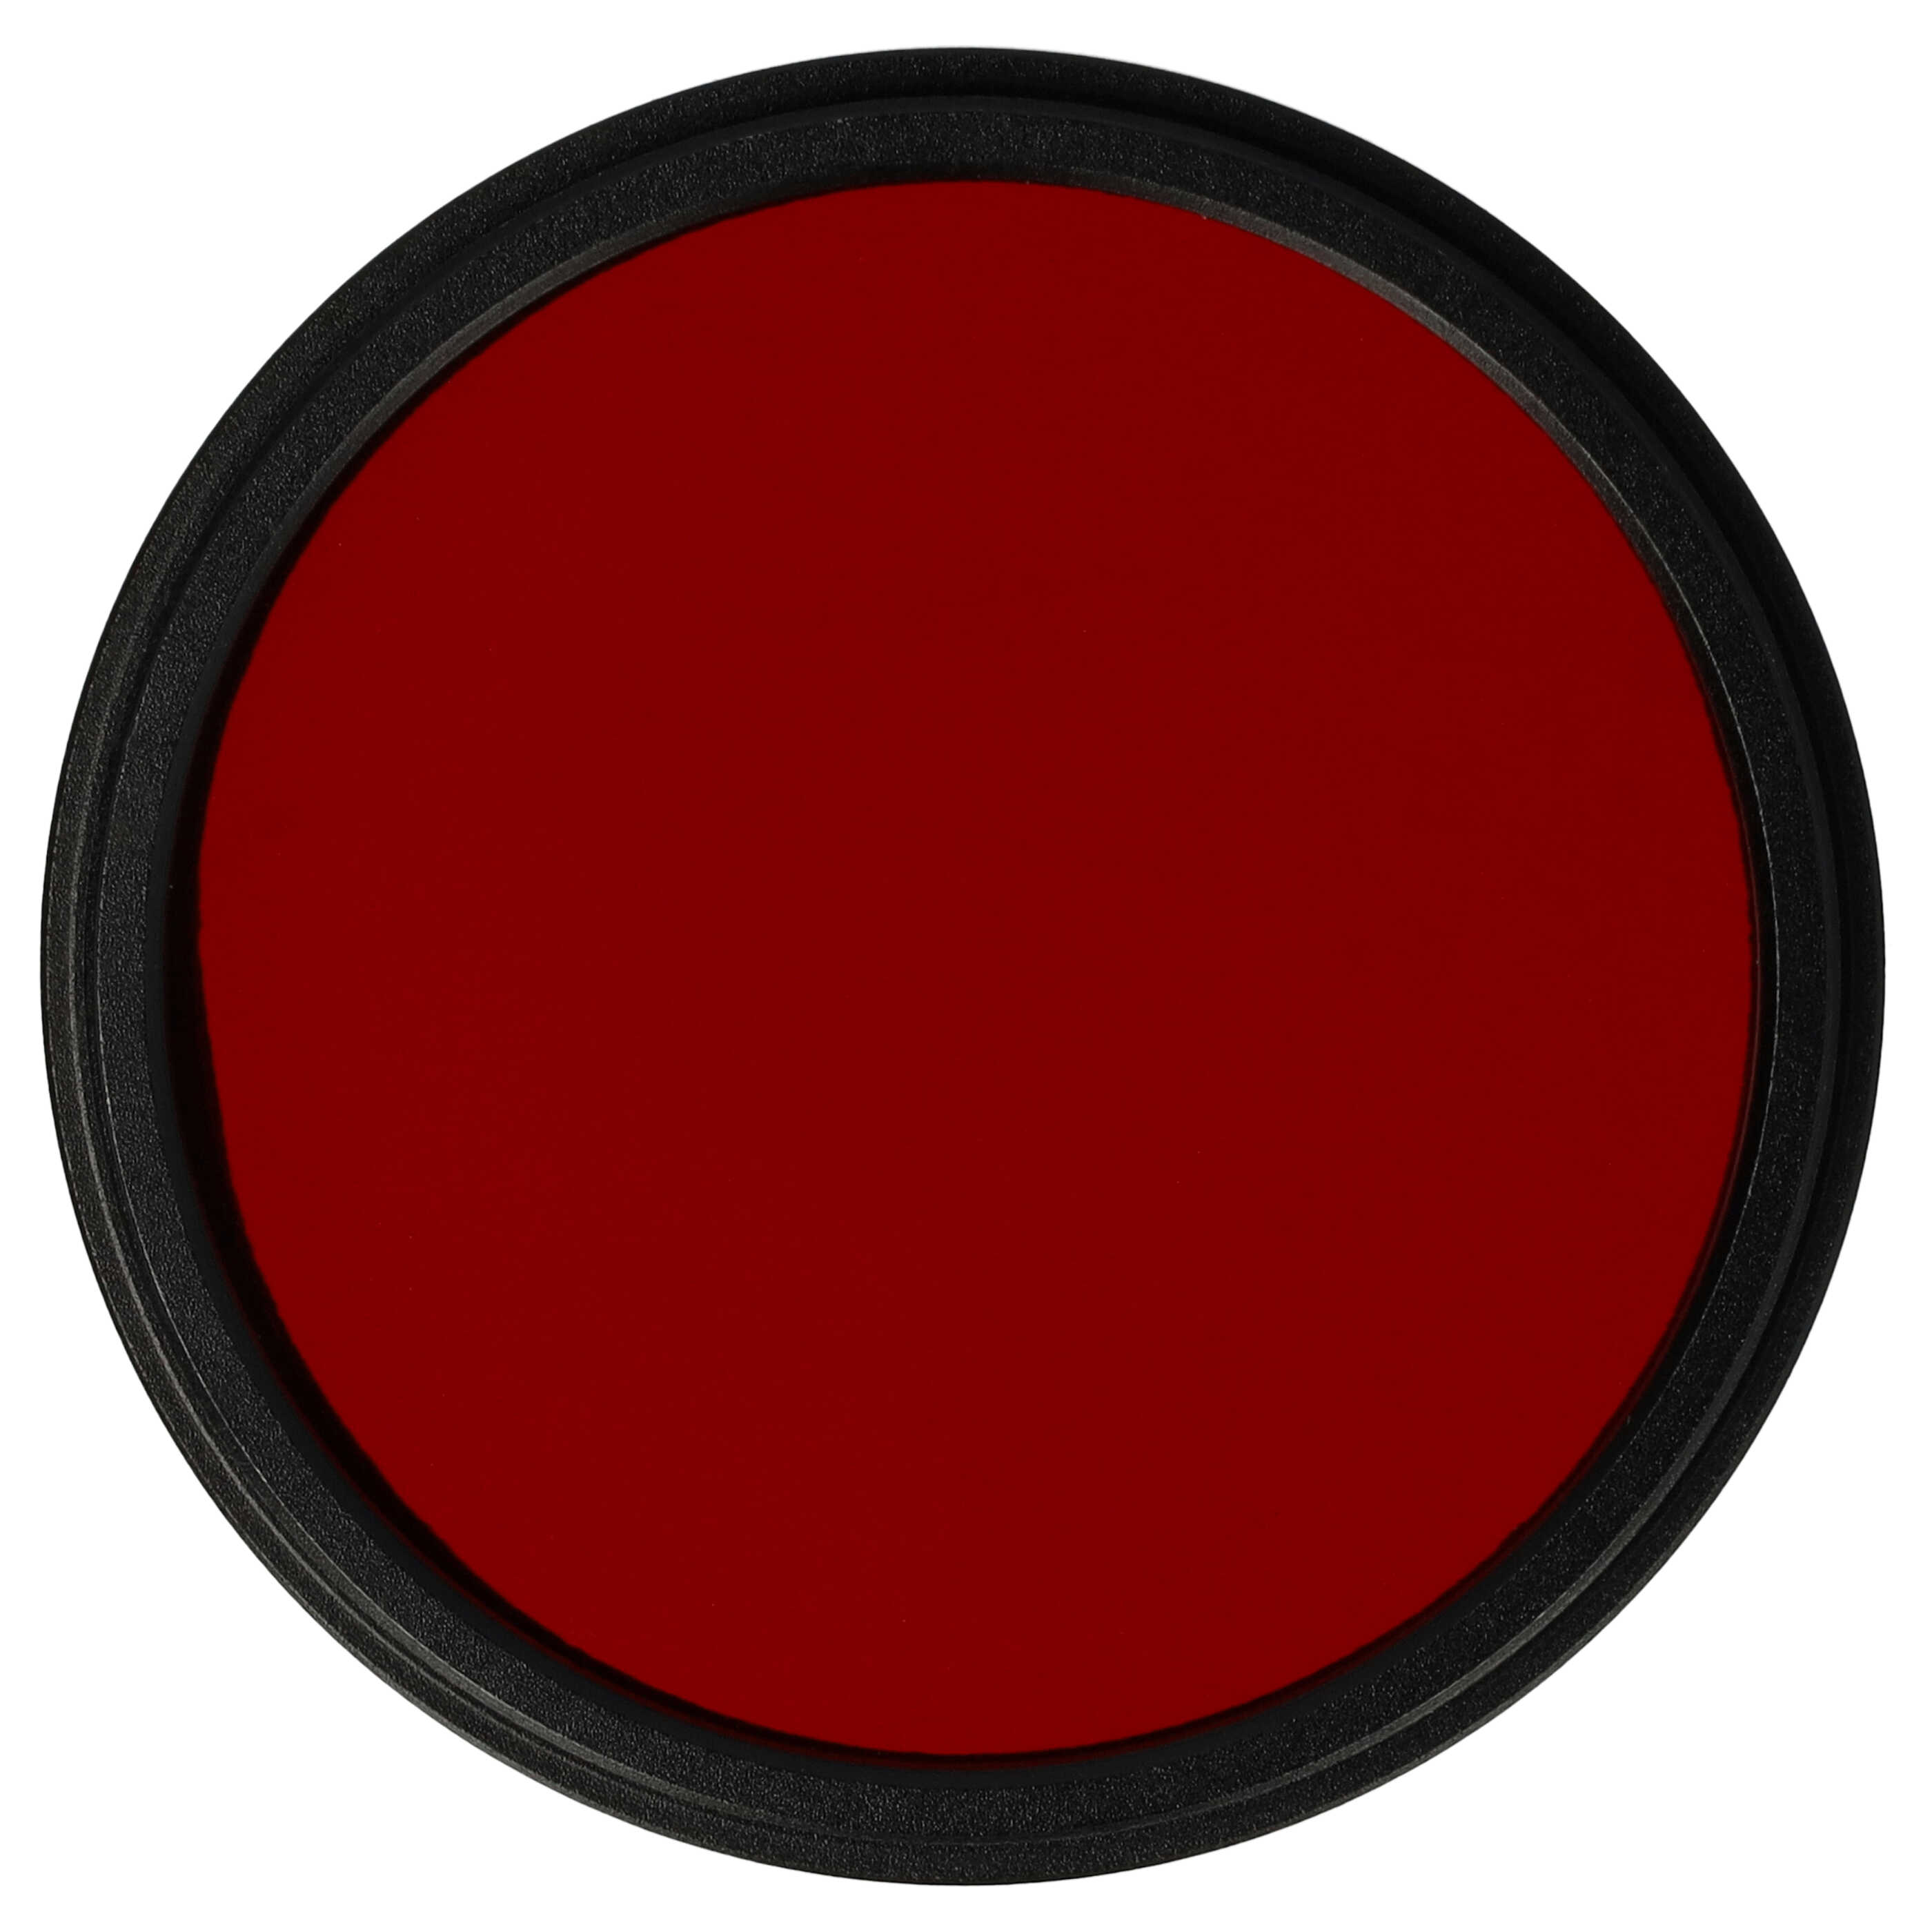 Filtro de color para objetivo de cámara con rosca de filtro de 49 mm - Filtro rojo